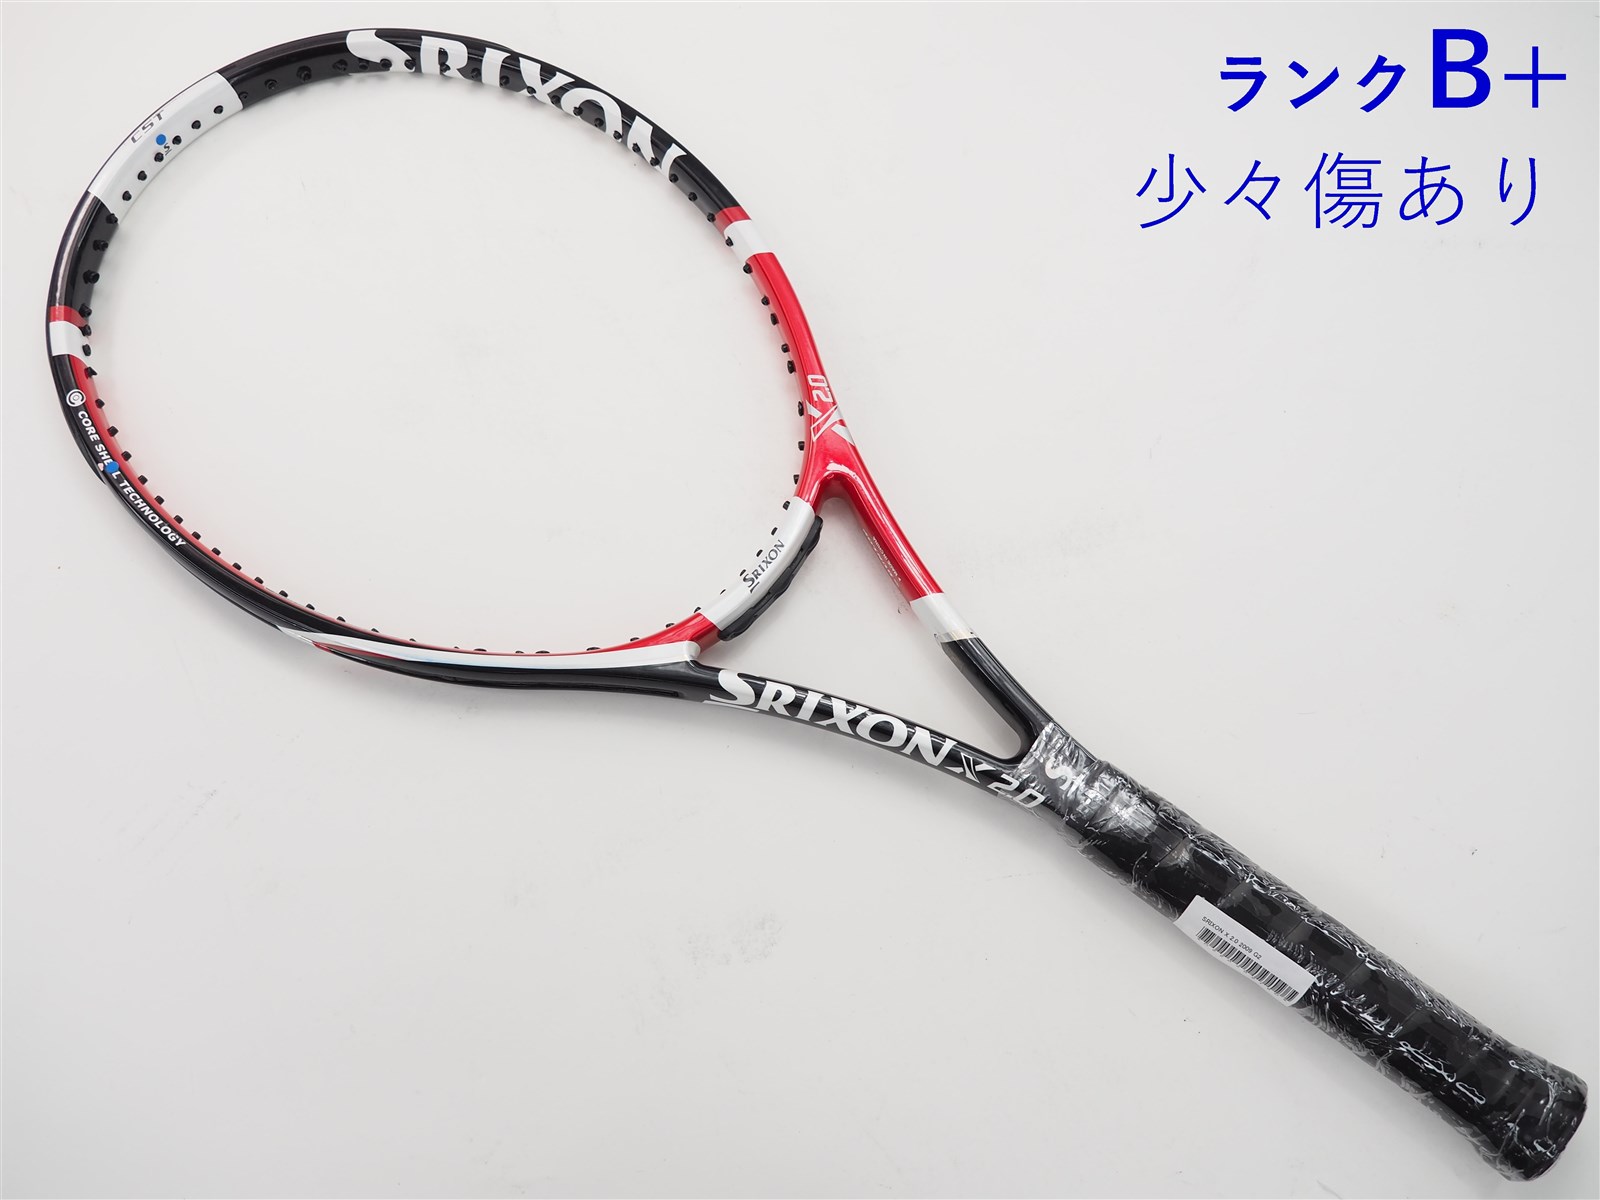 元グリップ交換済み付属品テニスラケット スリクソン スリクソン エックス 2.0 2009年モデル【一部グロメット割れ有り】 (G2)SRIXON SRIXON X 2.0 2009